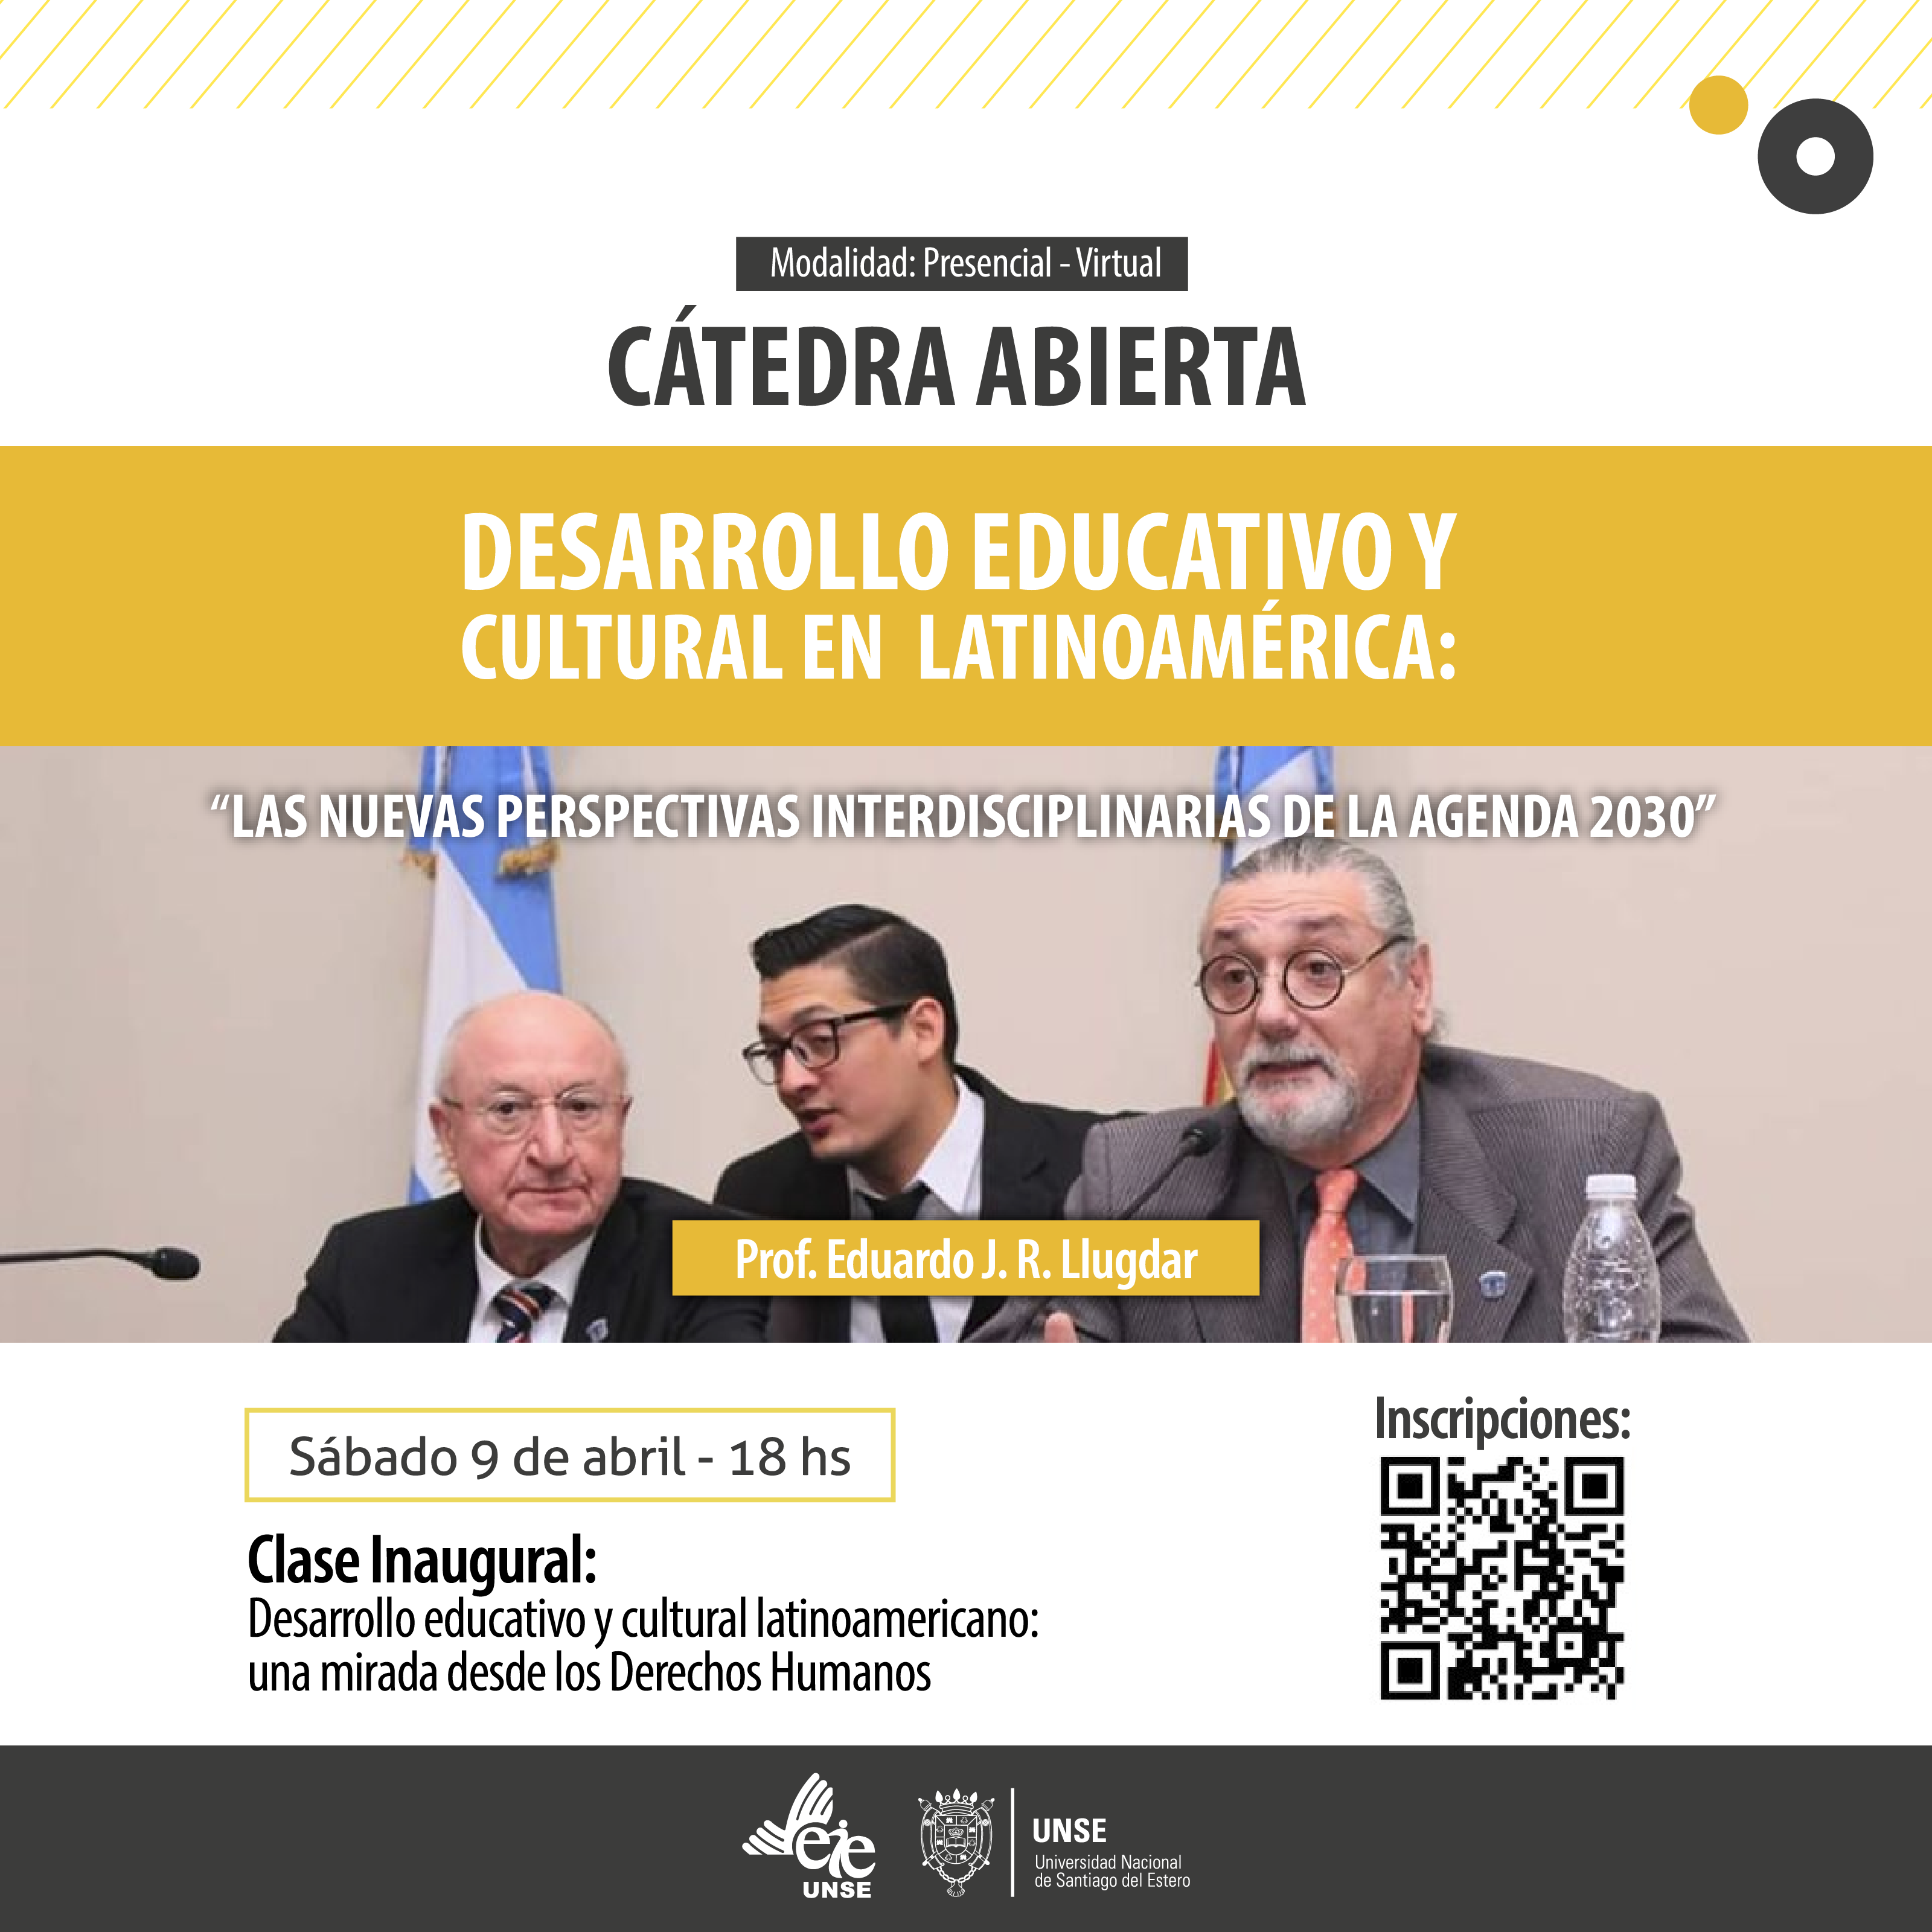 Clase Inaugural de la Cátedra Abierta "Desarrollo Educativo y Cultural en Latinoamérica"